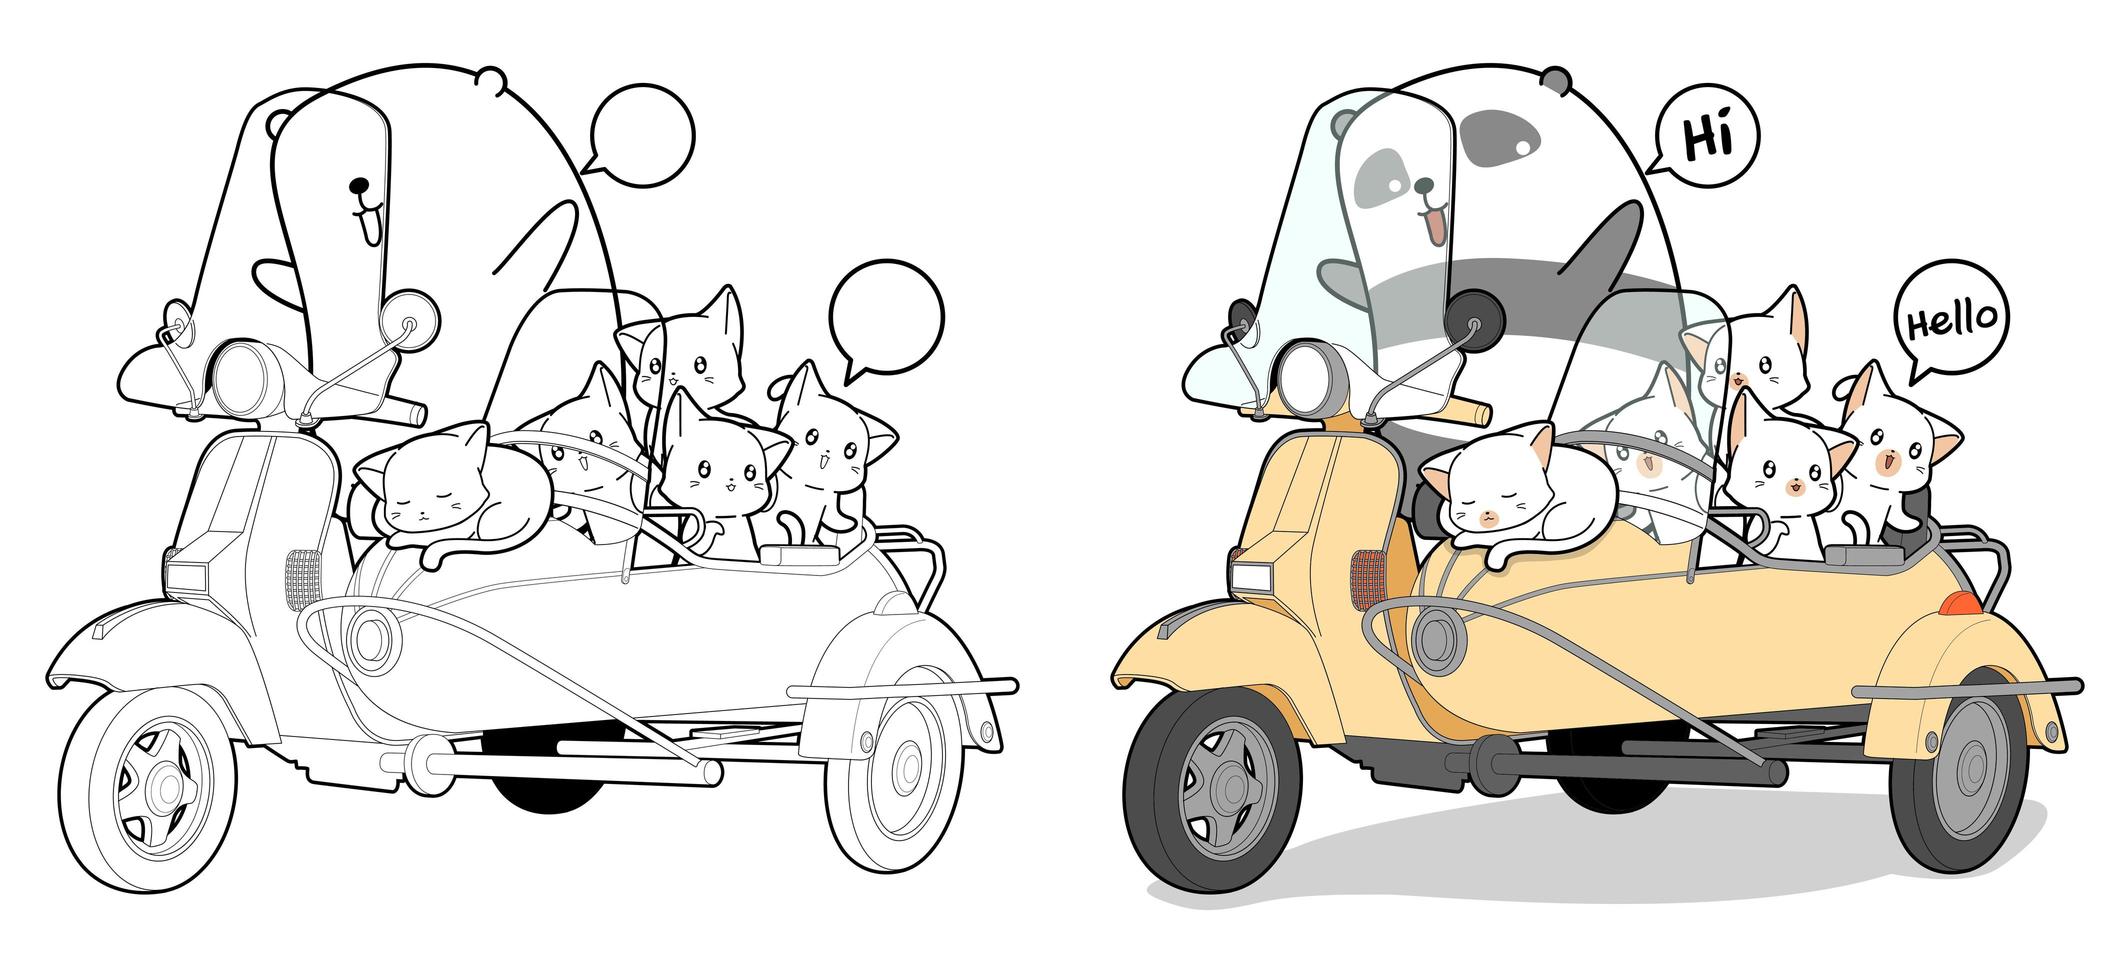 adorabile panda in sella a uno scooter con i gatti cartoon pagina da colorare vettore